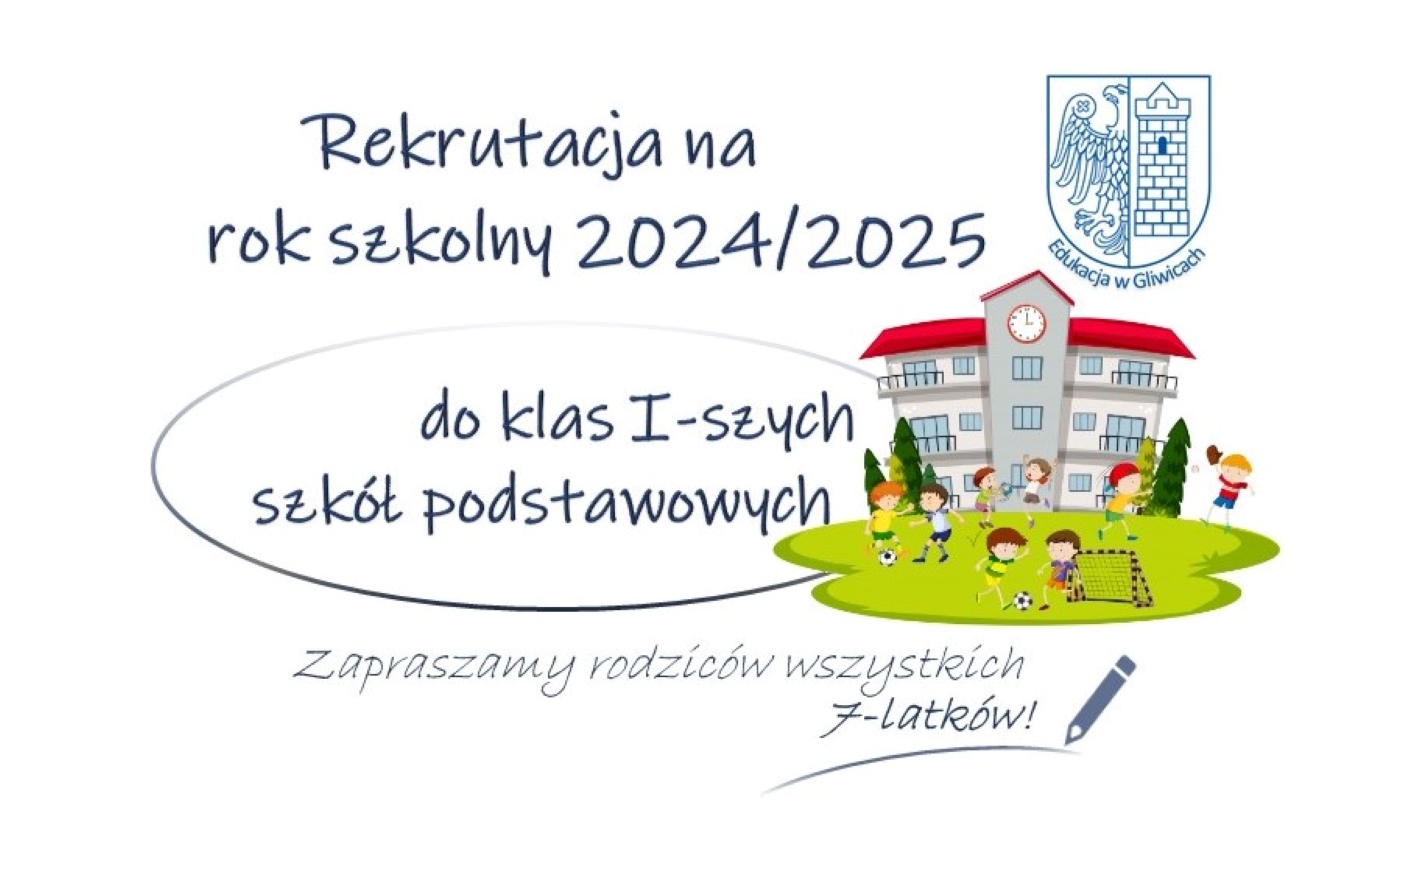 Rekrutacja do szkół podstawowych 2024/2025